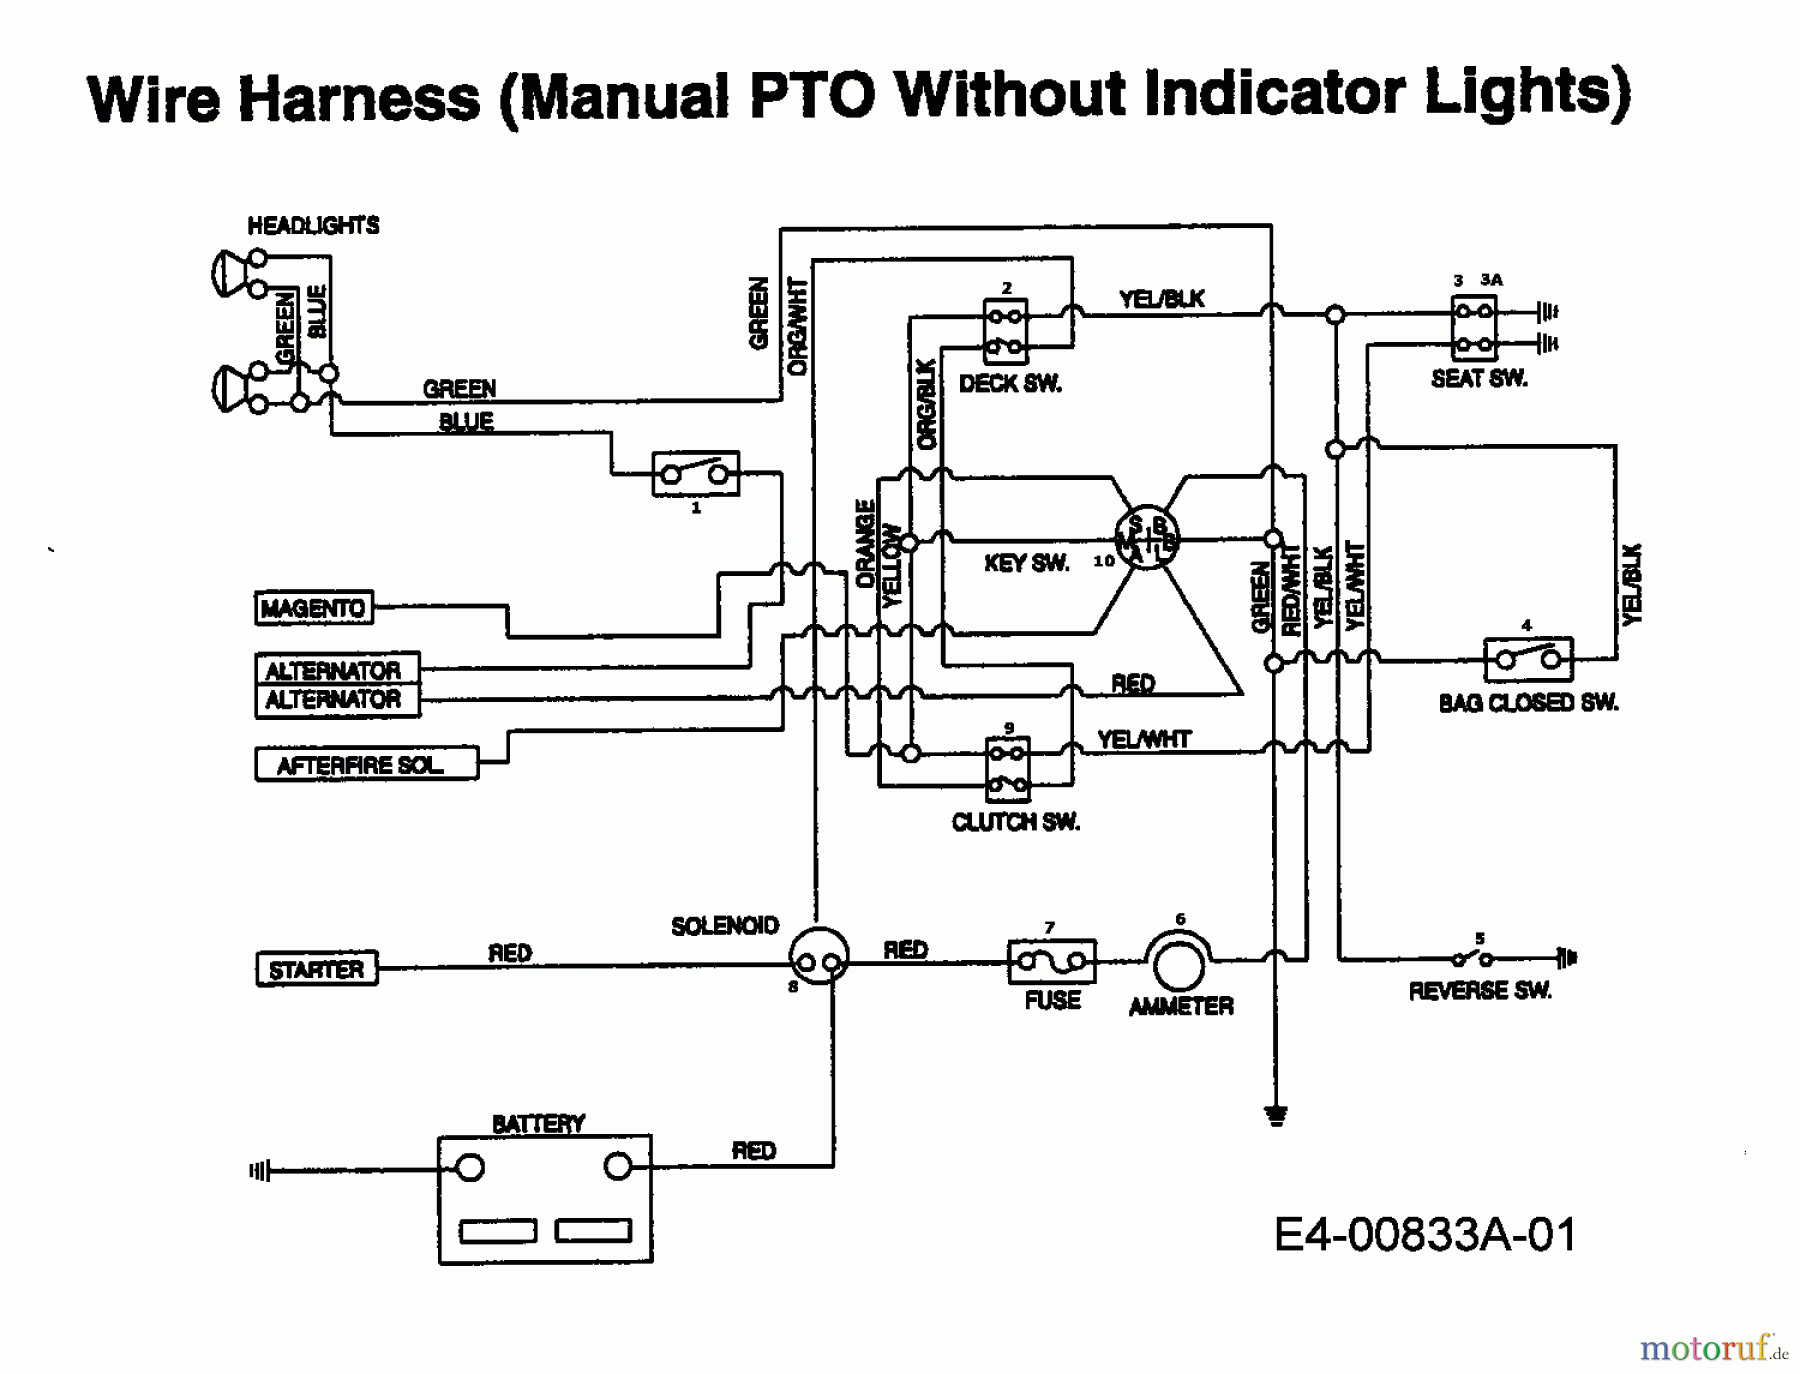  Univert Tracteurs de pelouse UN 145 BNH 13AP794N663  (1998) Plan électrique sans lampe de contrôle